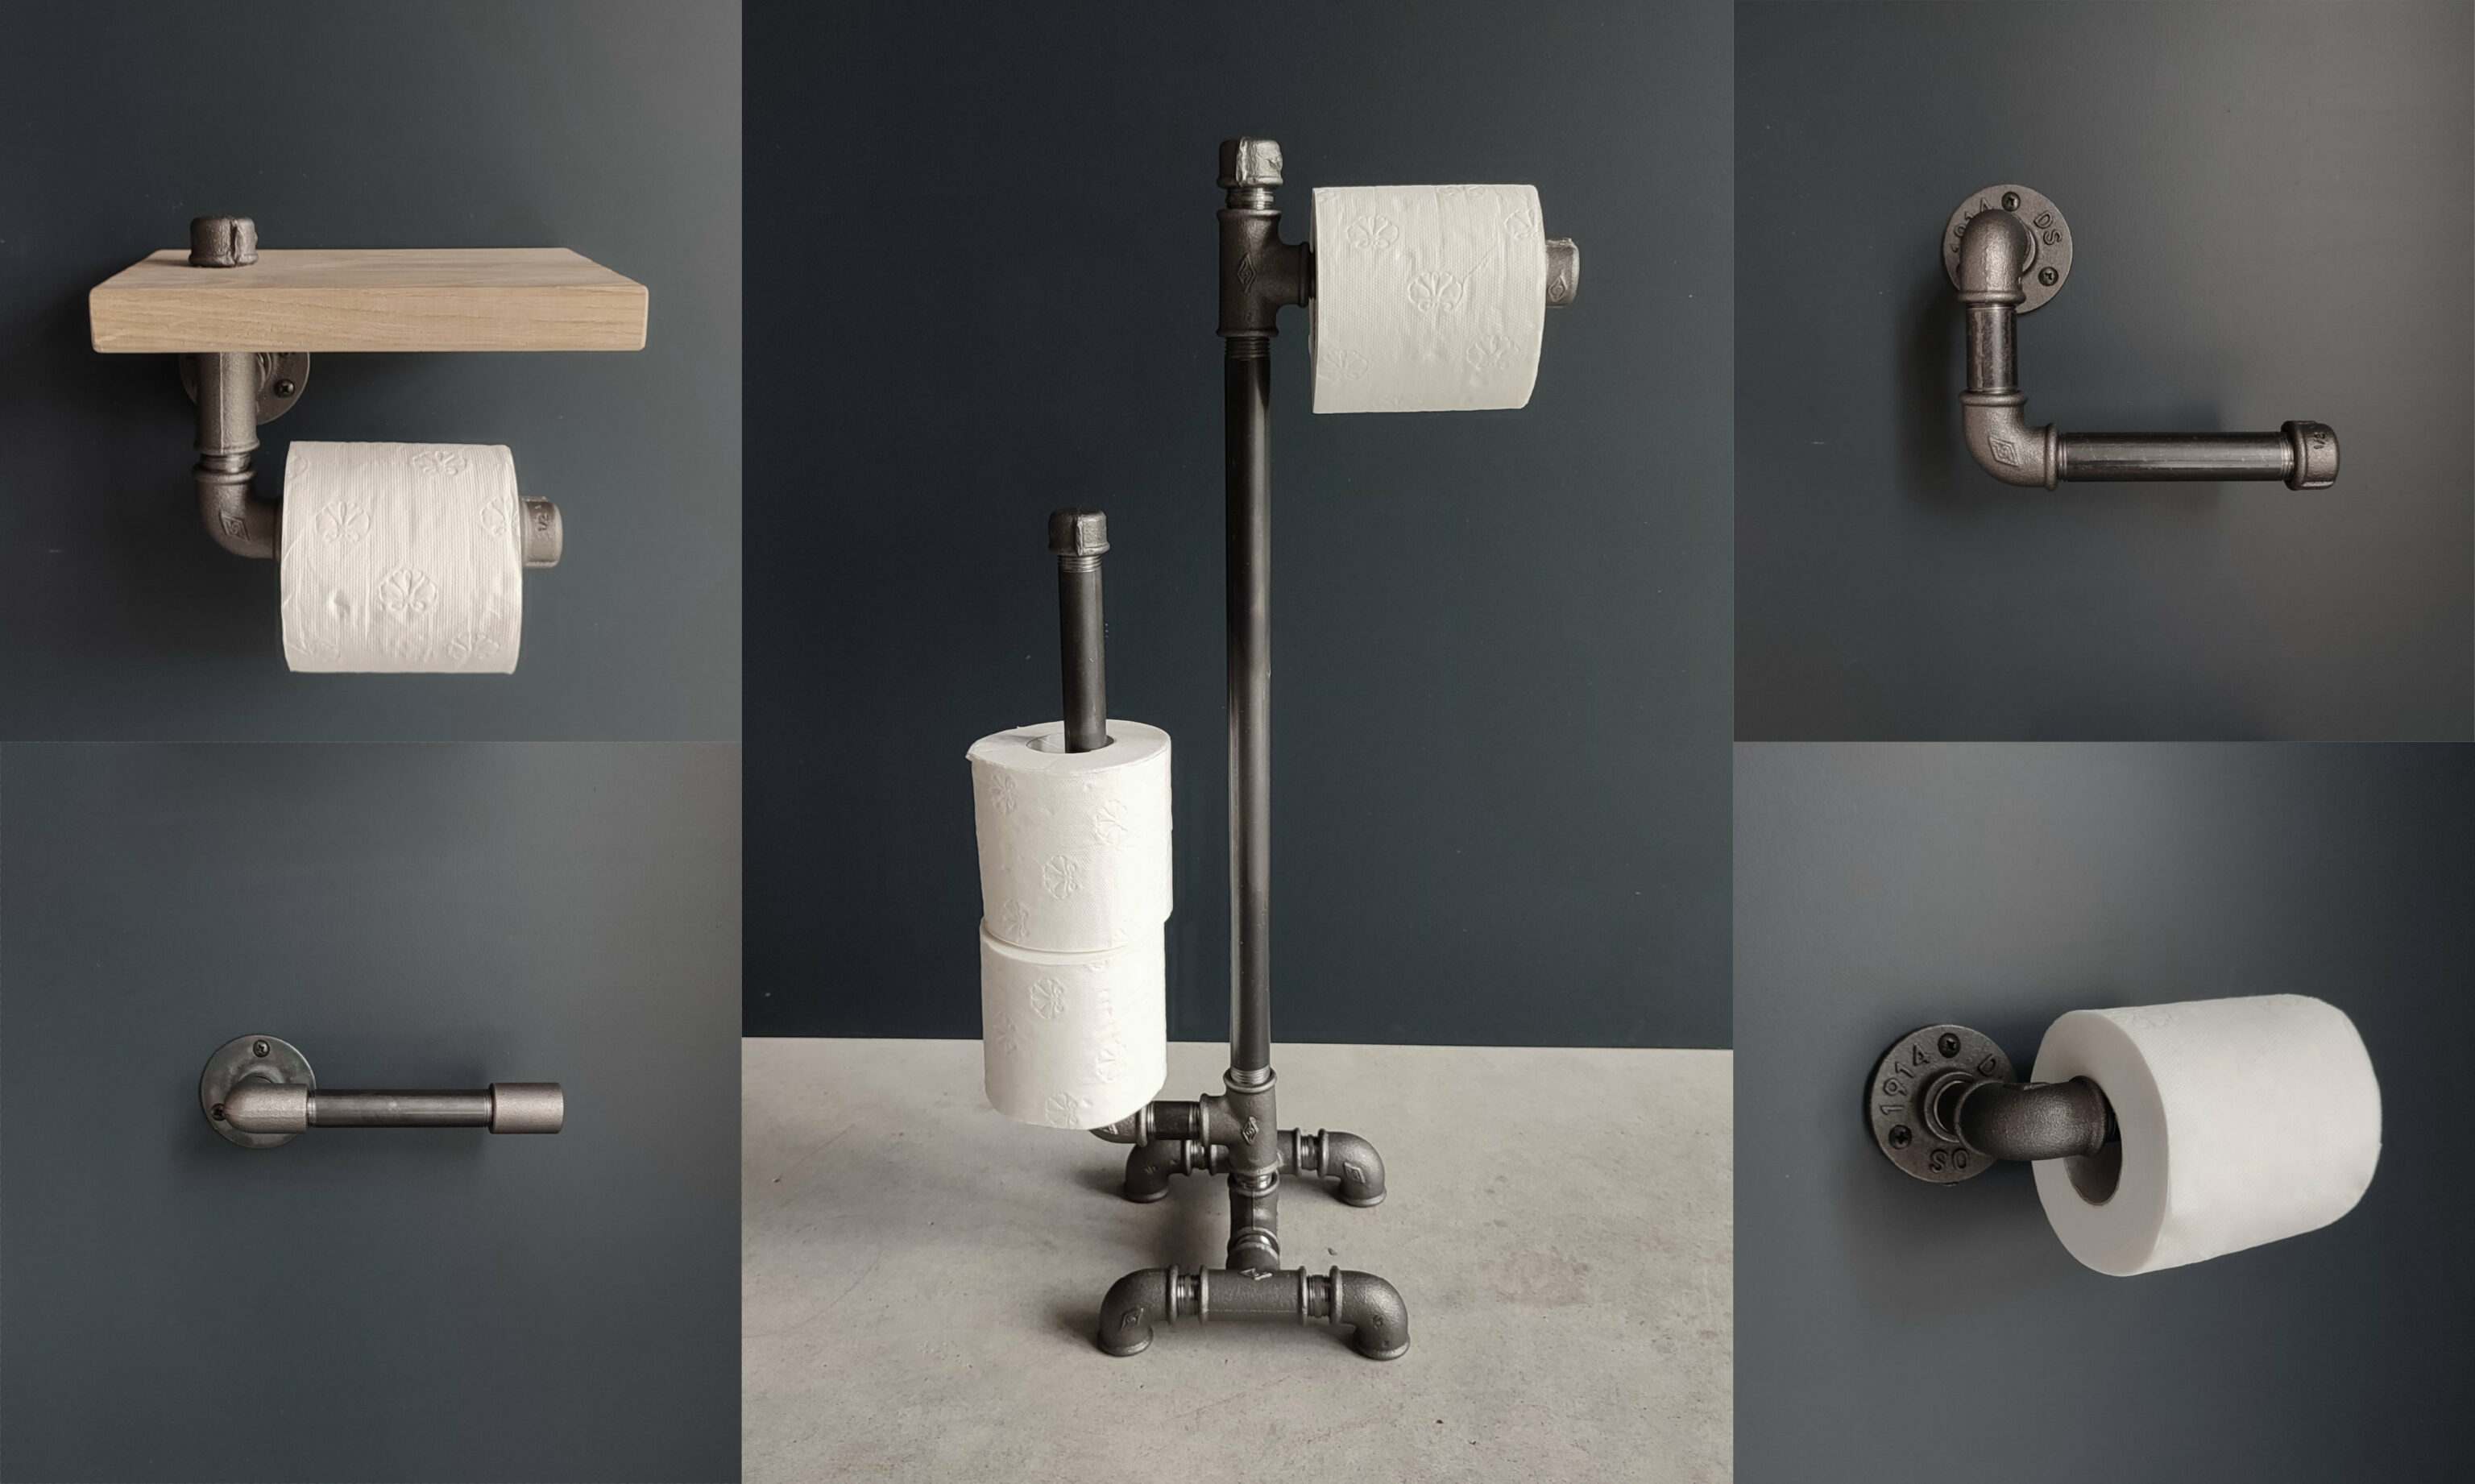 5 modèles de porte papier toilette à fabriquer déco wc industriel